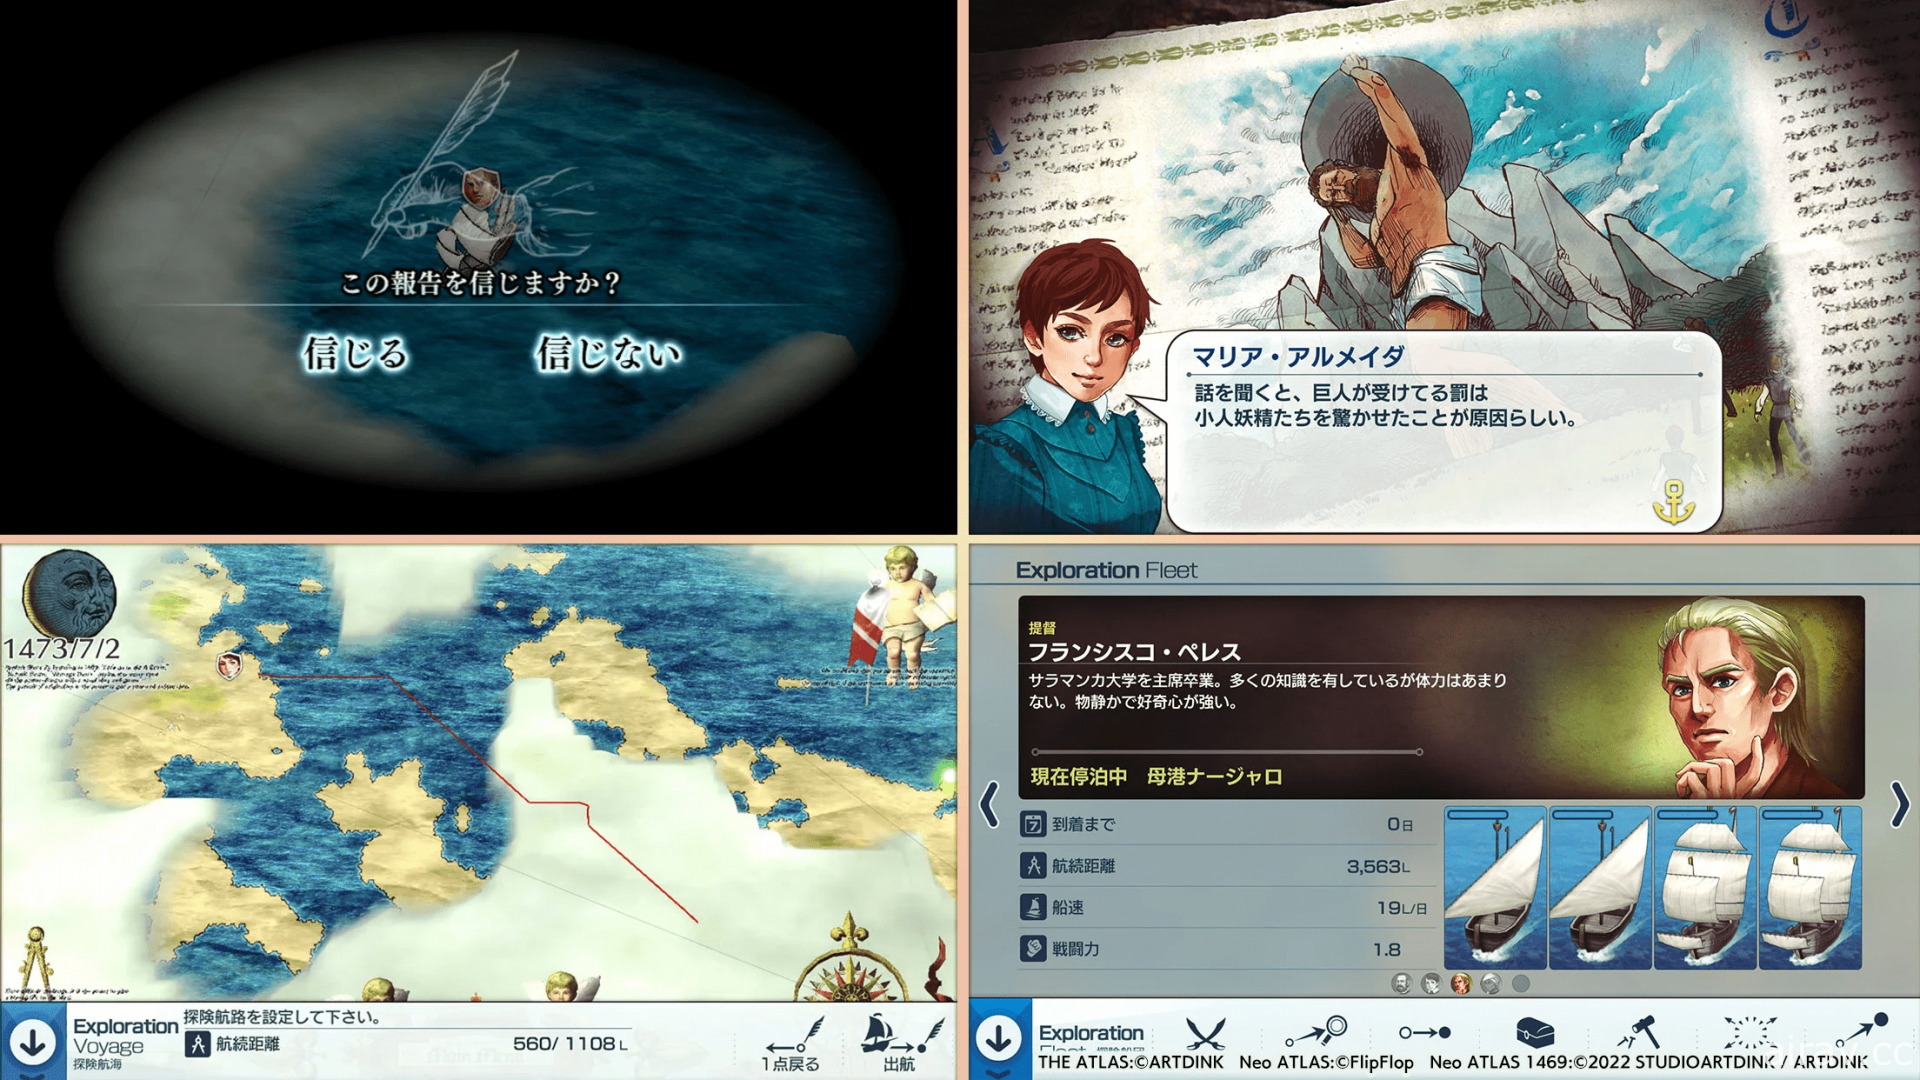 新世界发现模拟游戏《新世界地图 1469 MOBILE》于日本推出 挑战亲自制作世界地图